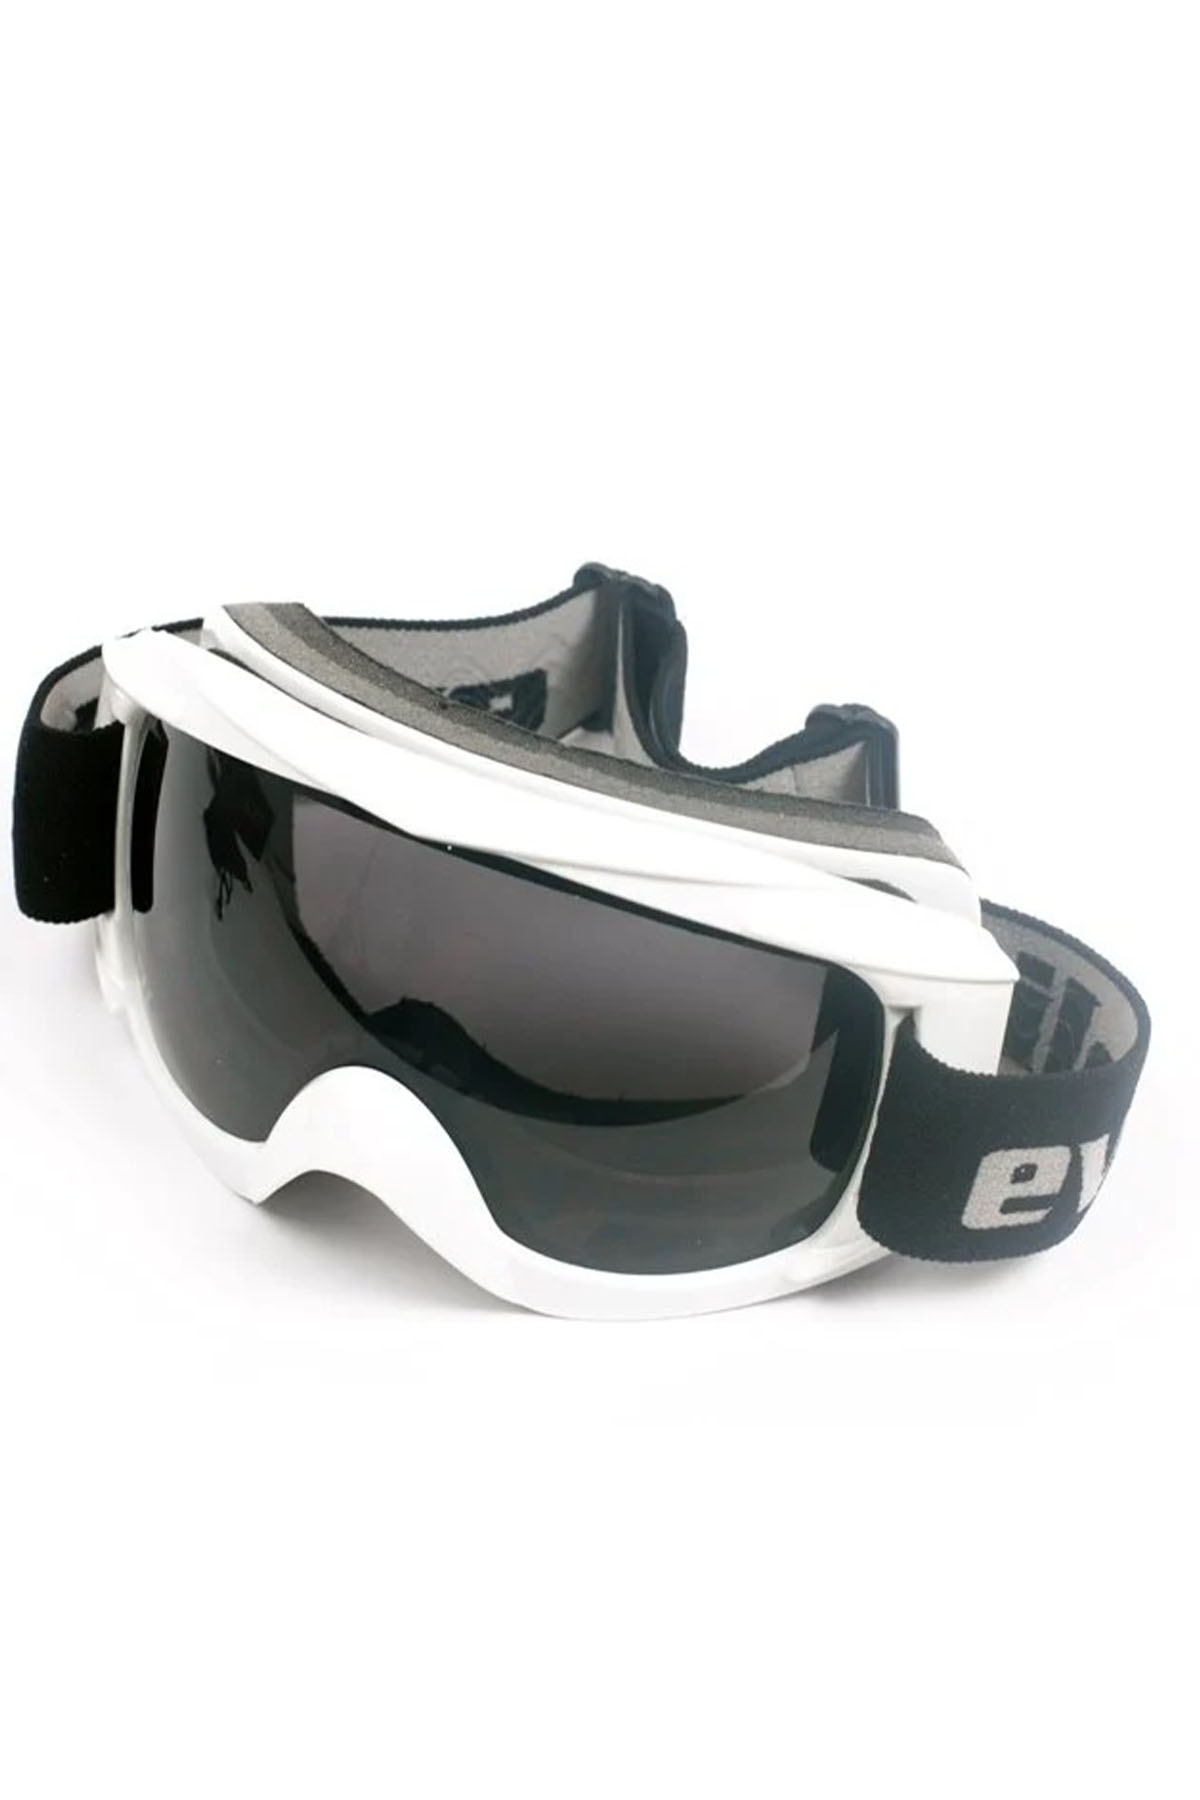 Evolite Protect Ski Beyaz Kayak Gözlüğü